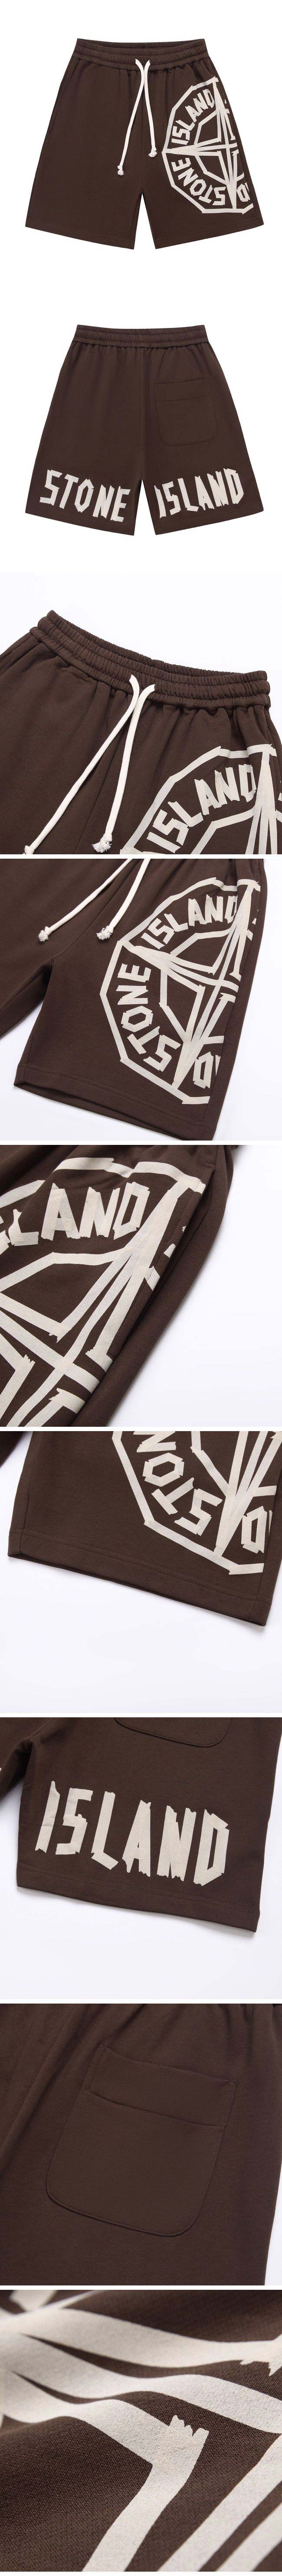 Stone Island Print Logo Half Pants ストーン アイランド プリント ロゴ ハーフパンツ ブラウン